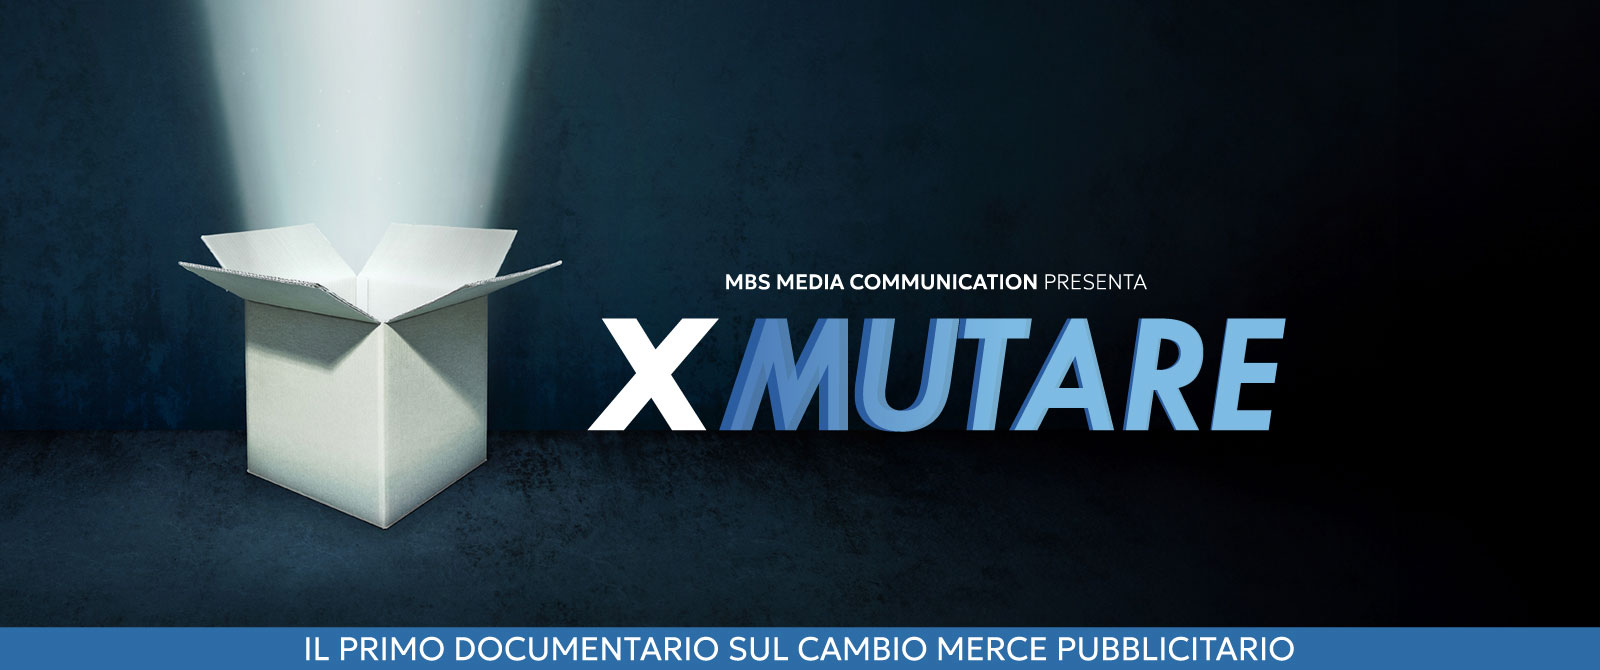 Presentazione del docufilm "XMUTARE"